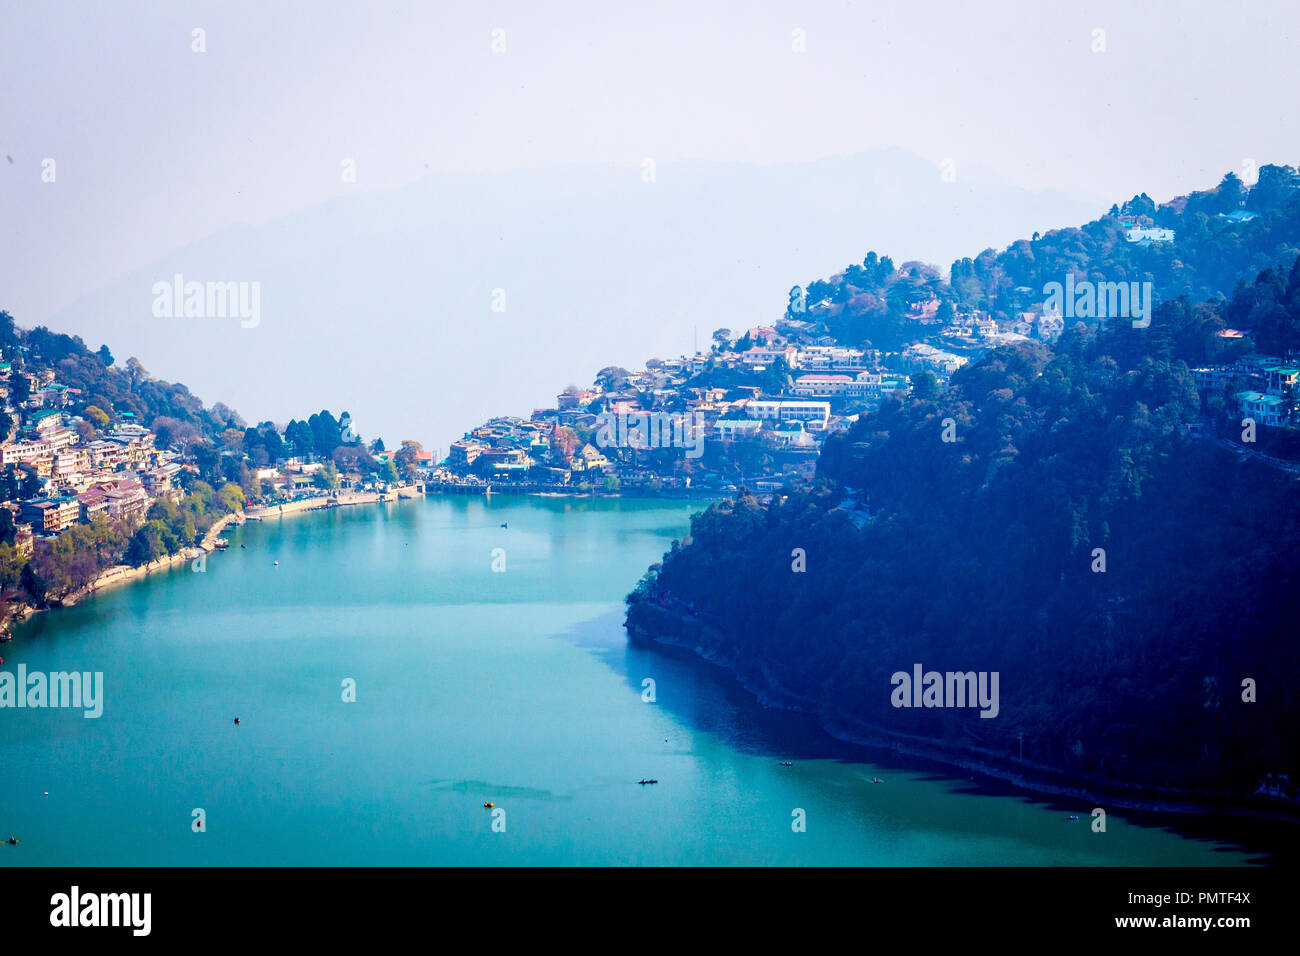 Naini Lake View Point, Uttarakhand, Nainital, Inde, Asie. L'endroit est aussi connu sous le nom de "Ville des lacs'. Banque D'Images